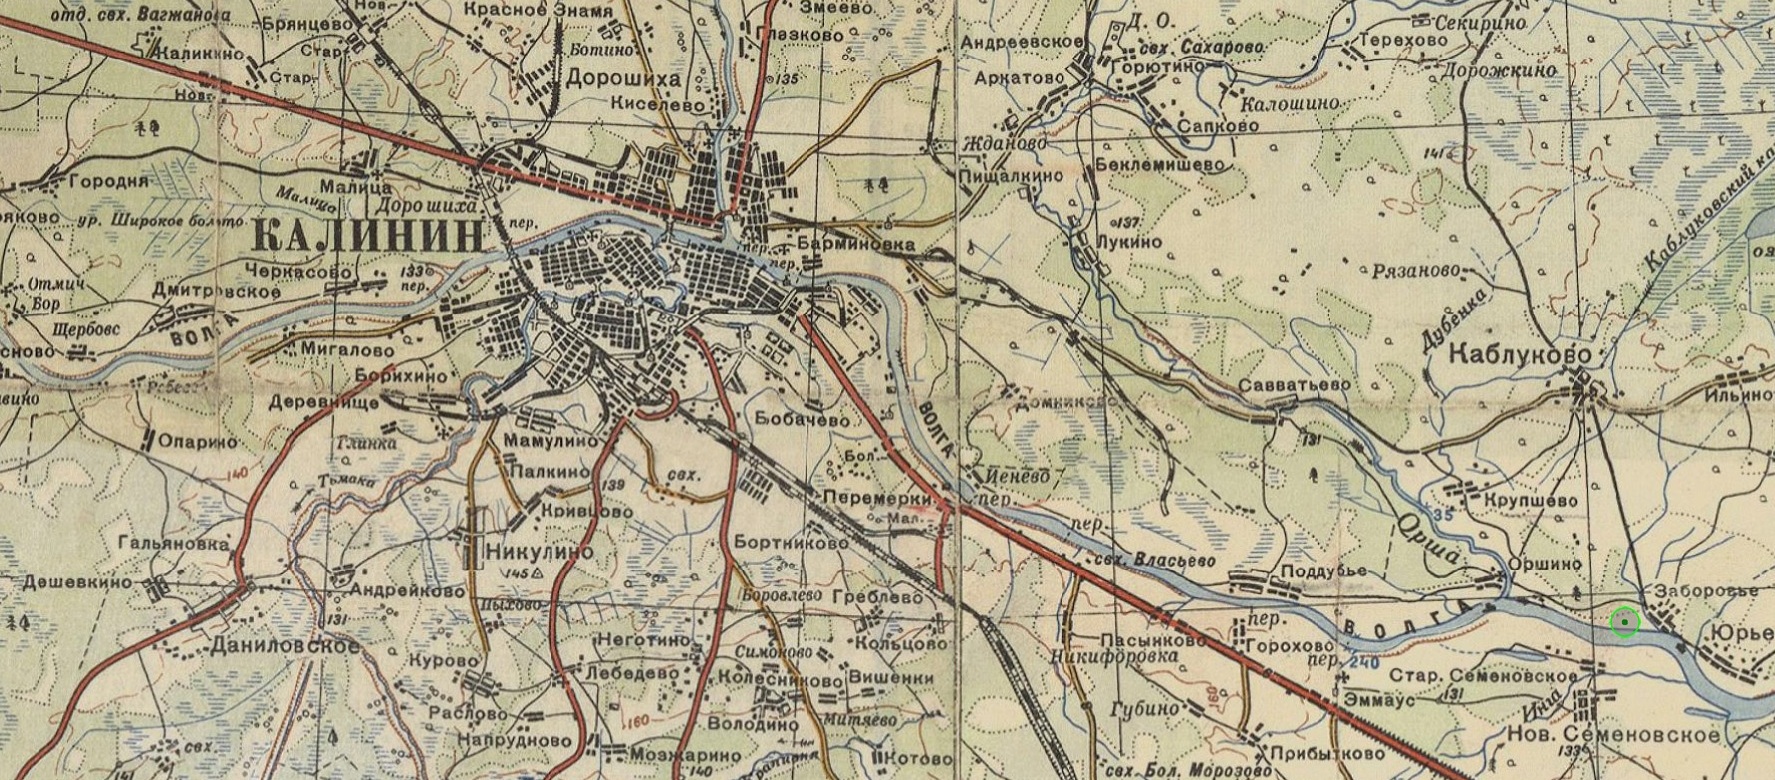 Дмитровск на карте. Карта Калинина. Калинин город на карте. Карта Калинина 1970 года. Показать на карте город Калинин.